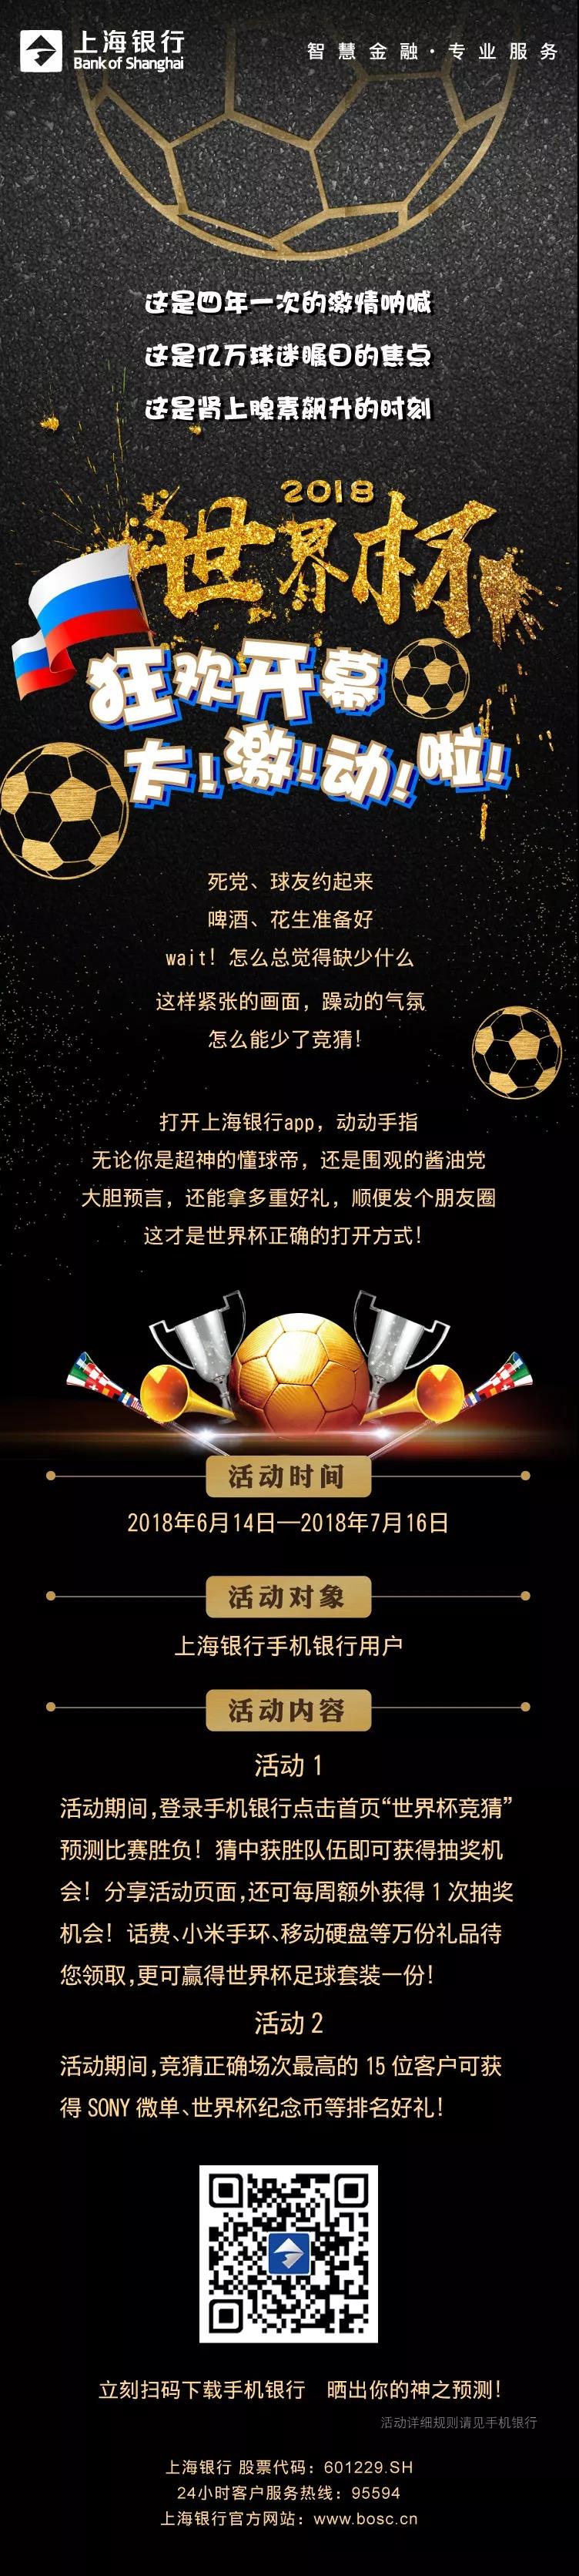 上海银行世界杯竞猜抽话费